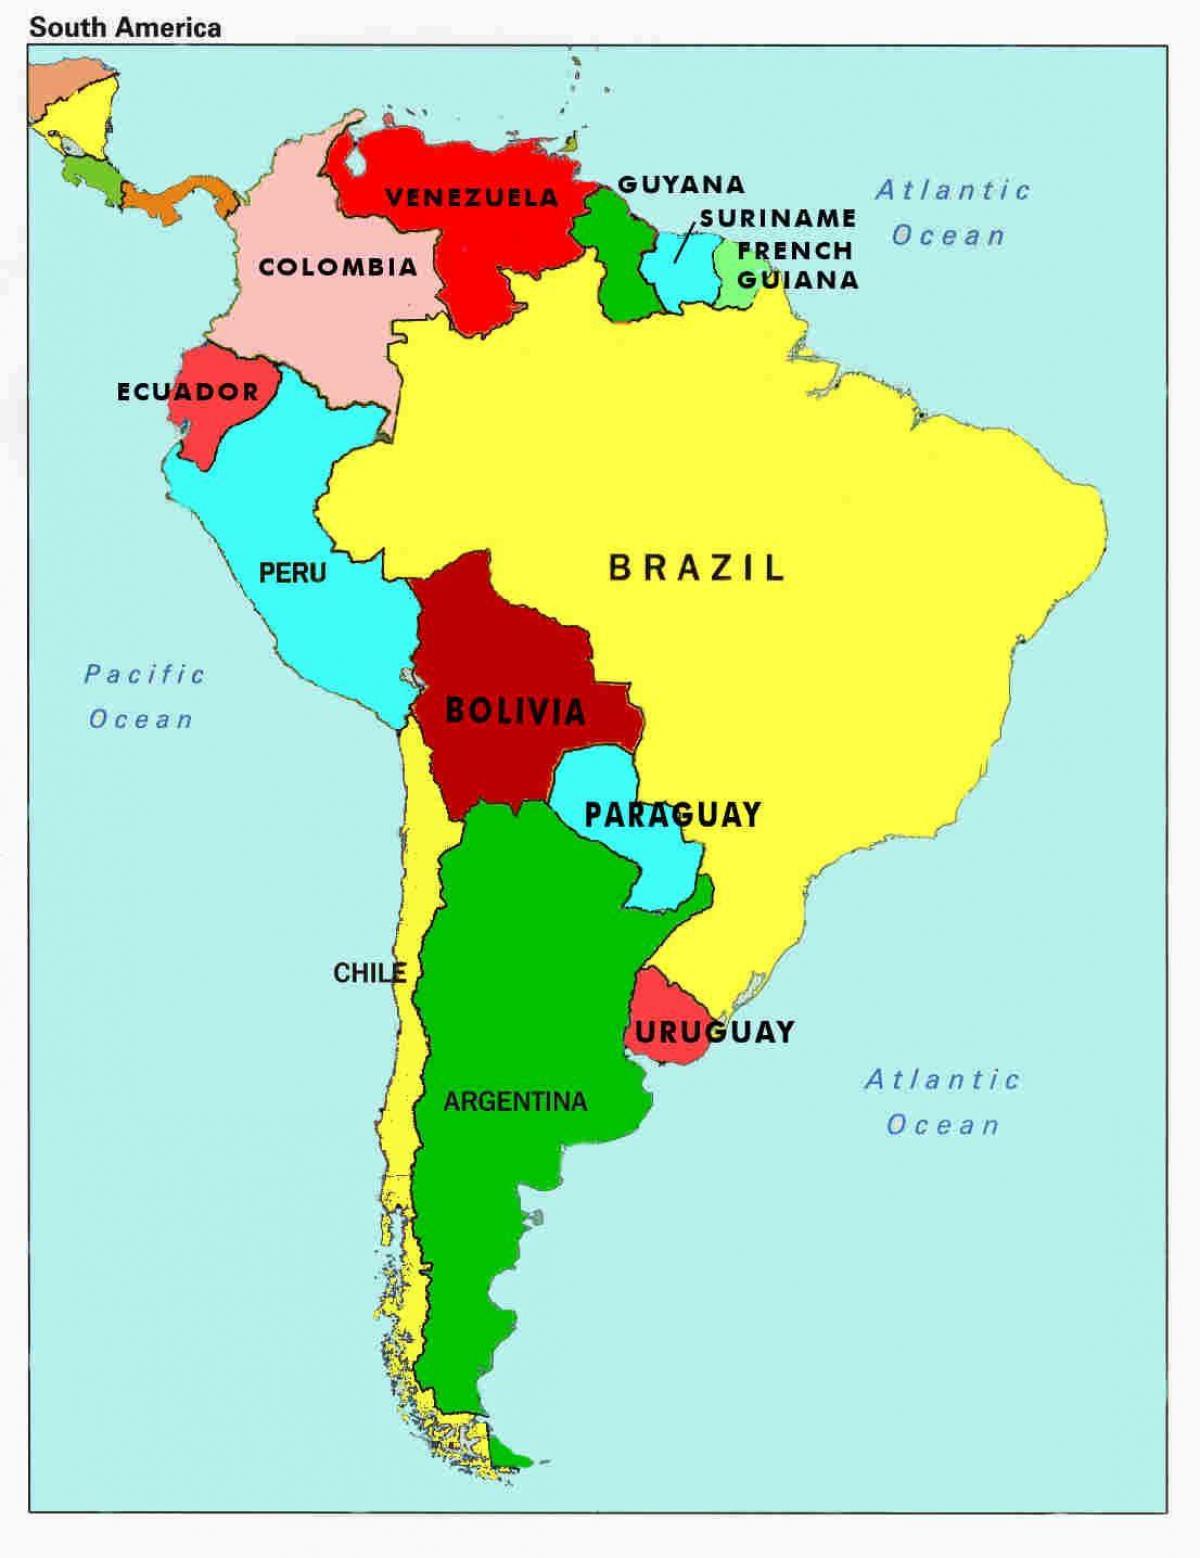 South american country. Государства и столицы Латинской Америки на карте. Карта Южной Америки со странами. Государства Южной Америки на карте. Карта Латинской Америки со странами.